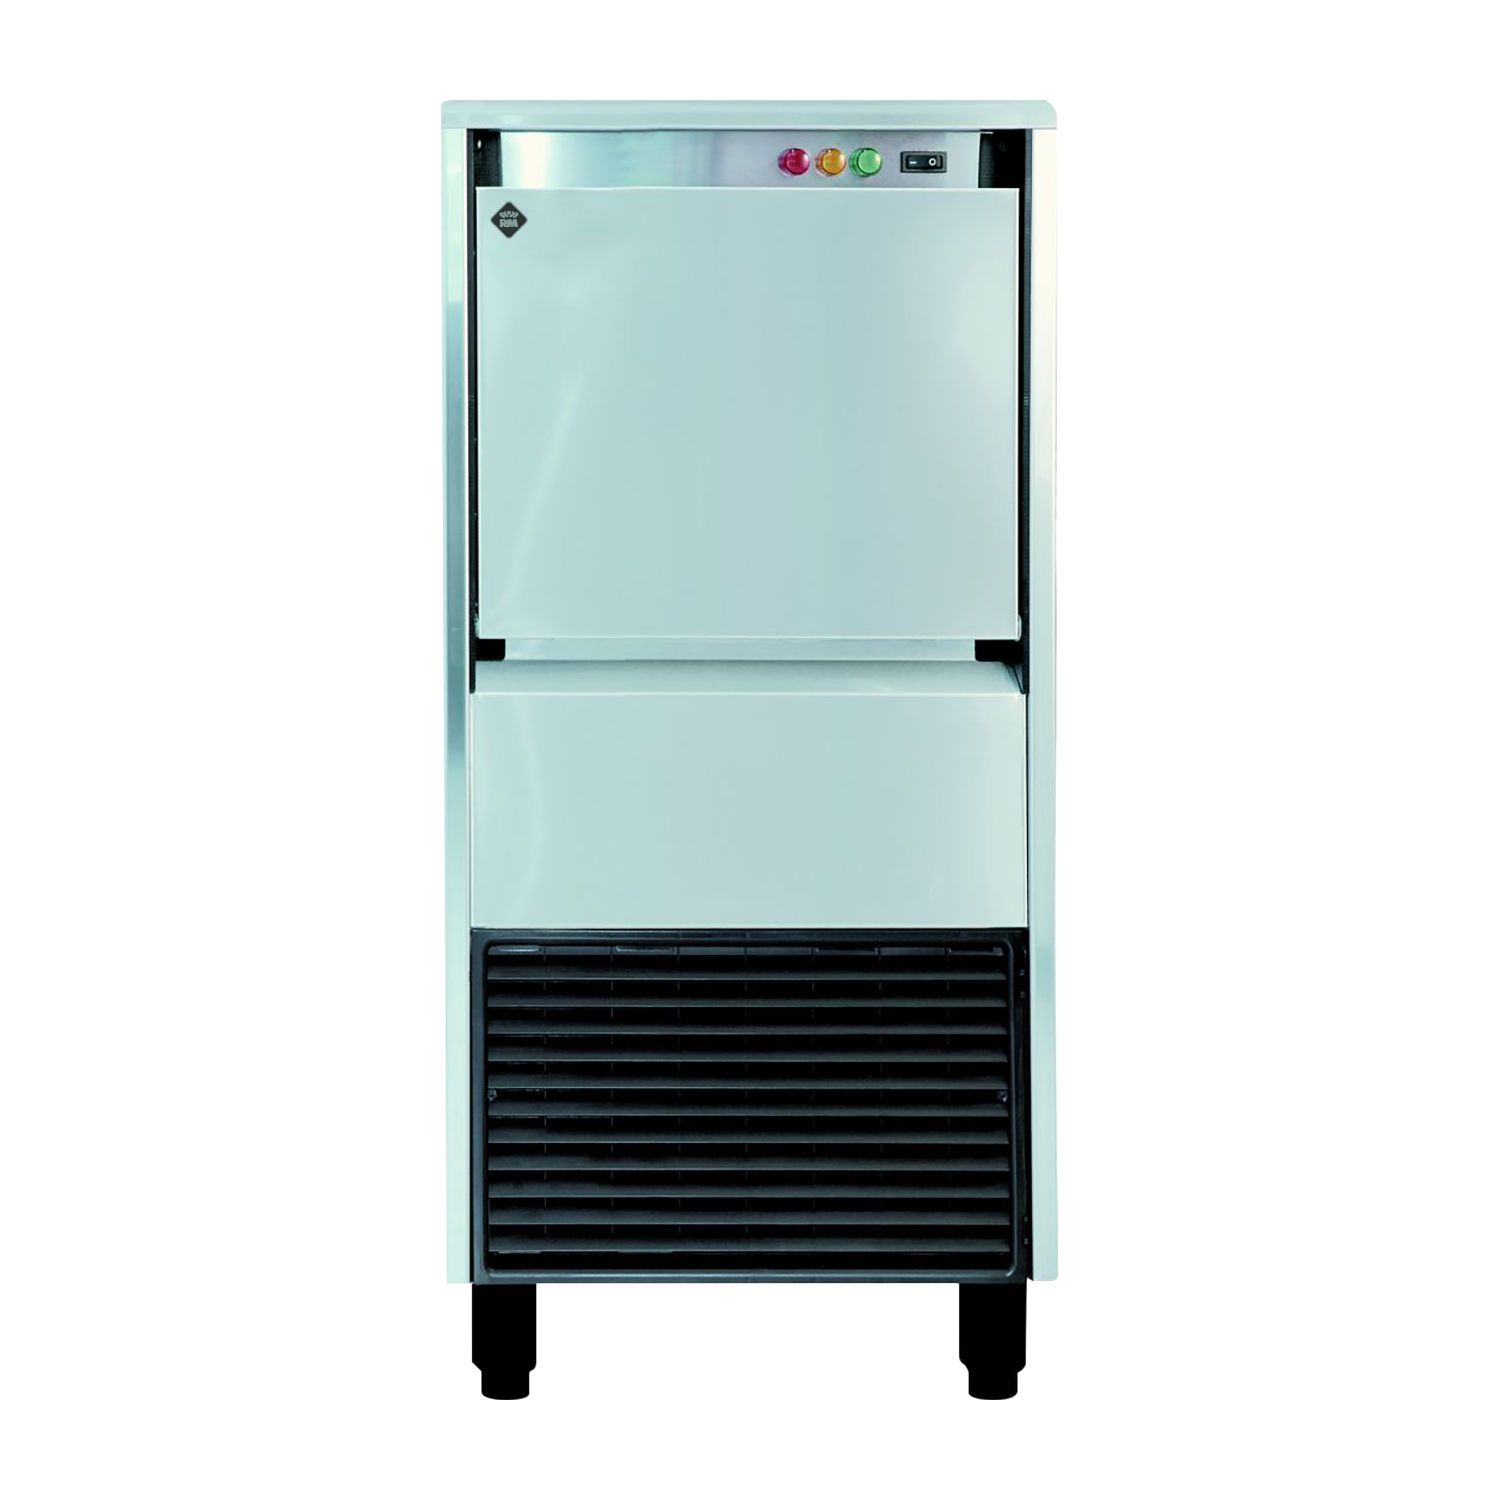 IMD 5520 A - Výrobník ledové drtě chl. vzduchem 55 kg/24h